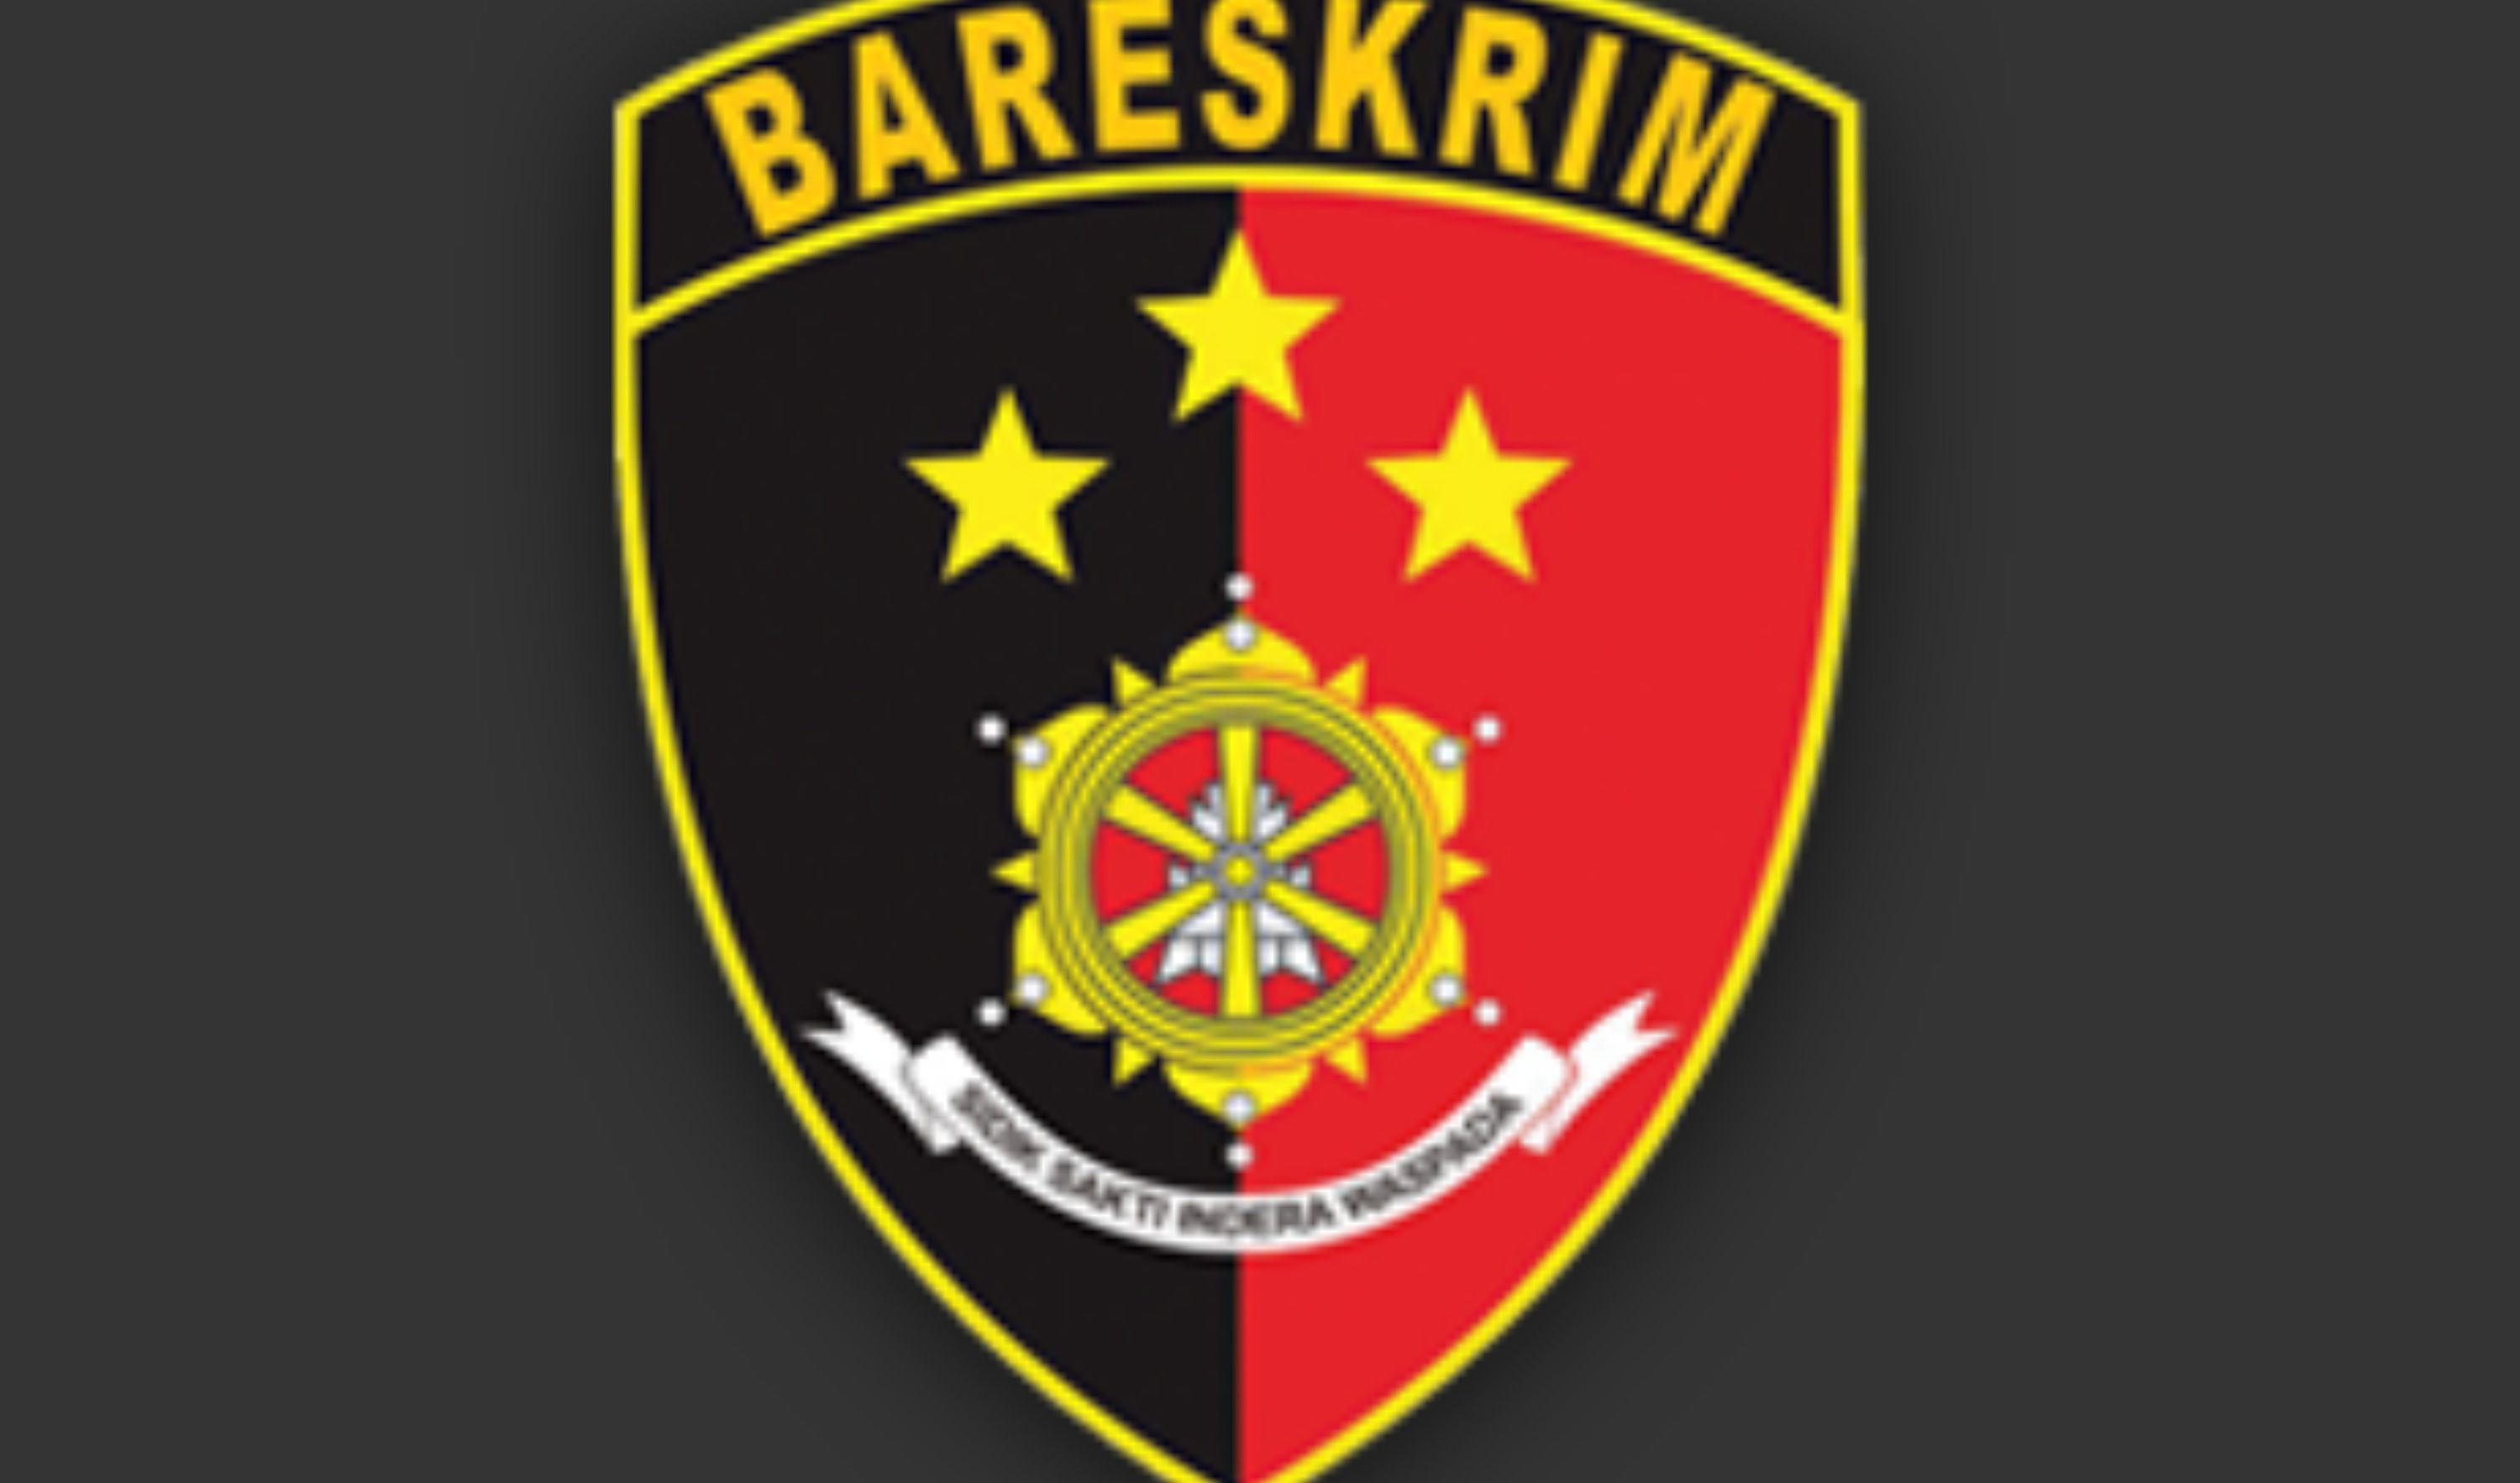 Logo Bareskrim Polri.